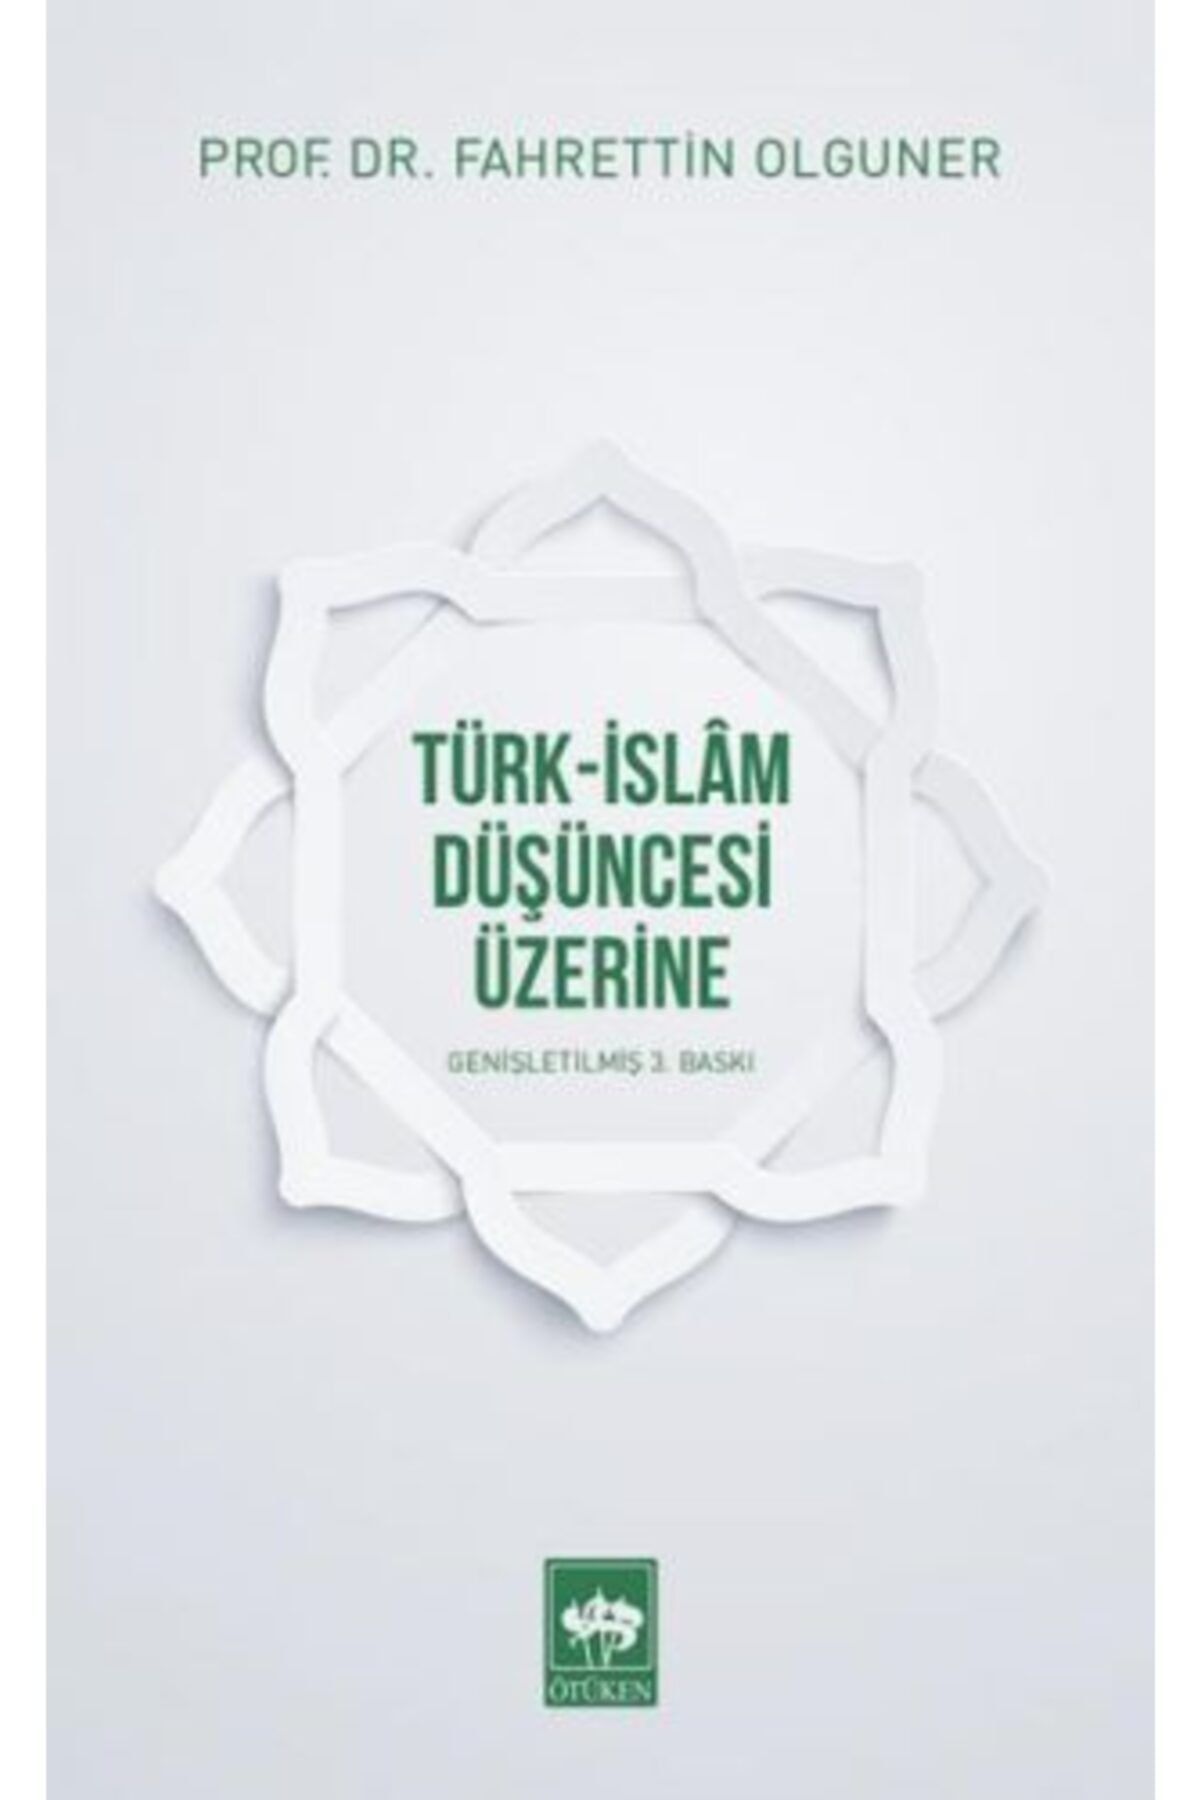 Ötüken Neşriyat Türk-islam Düşüncesi Üzerine / Fahrettin Olguner